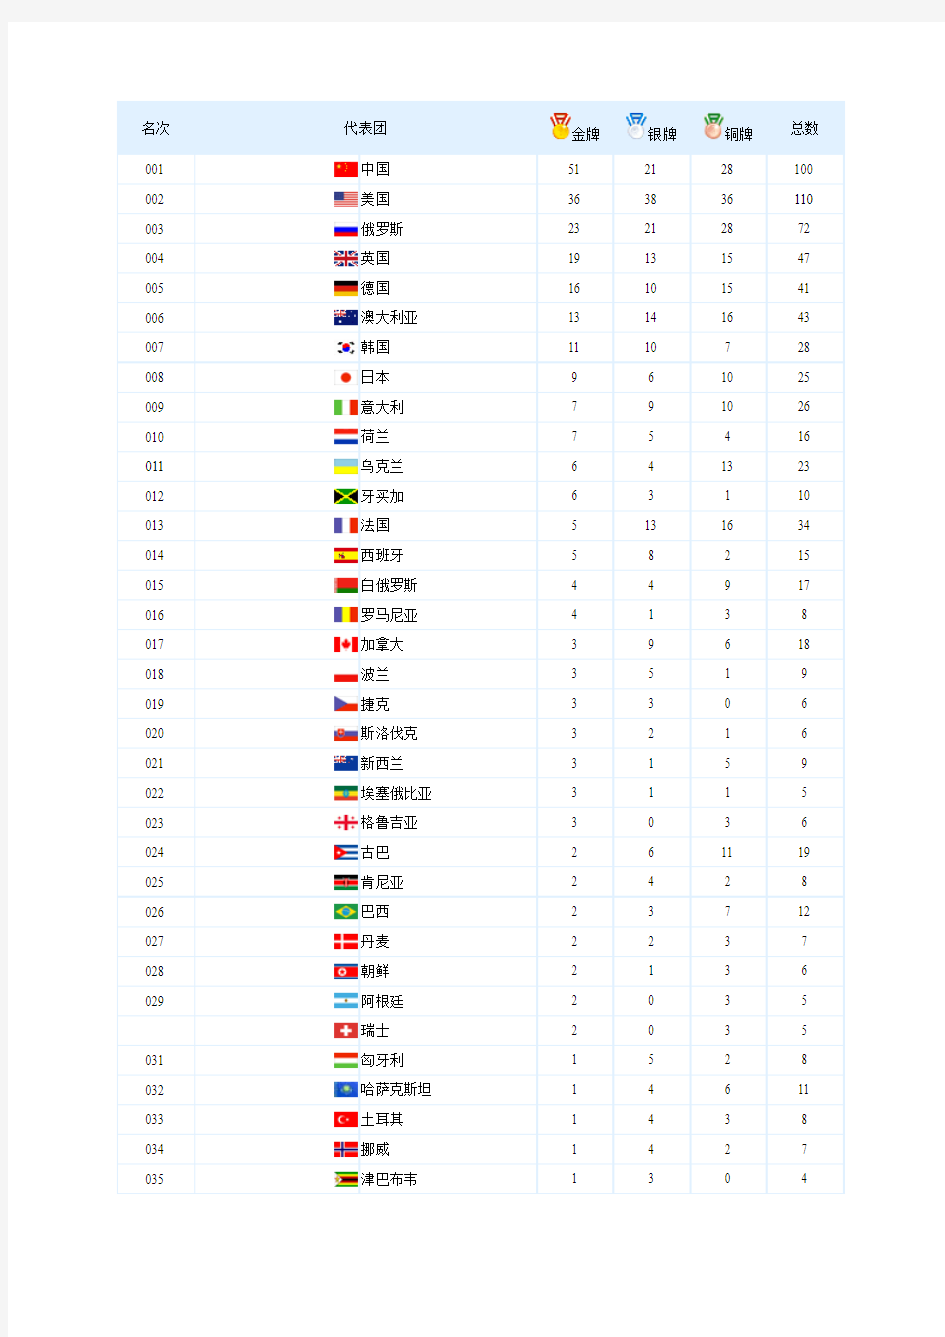 第29届奥运会奖牌榜(详细)